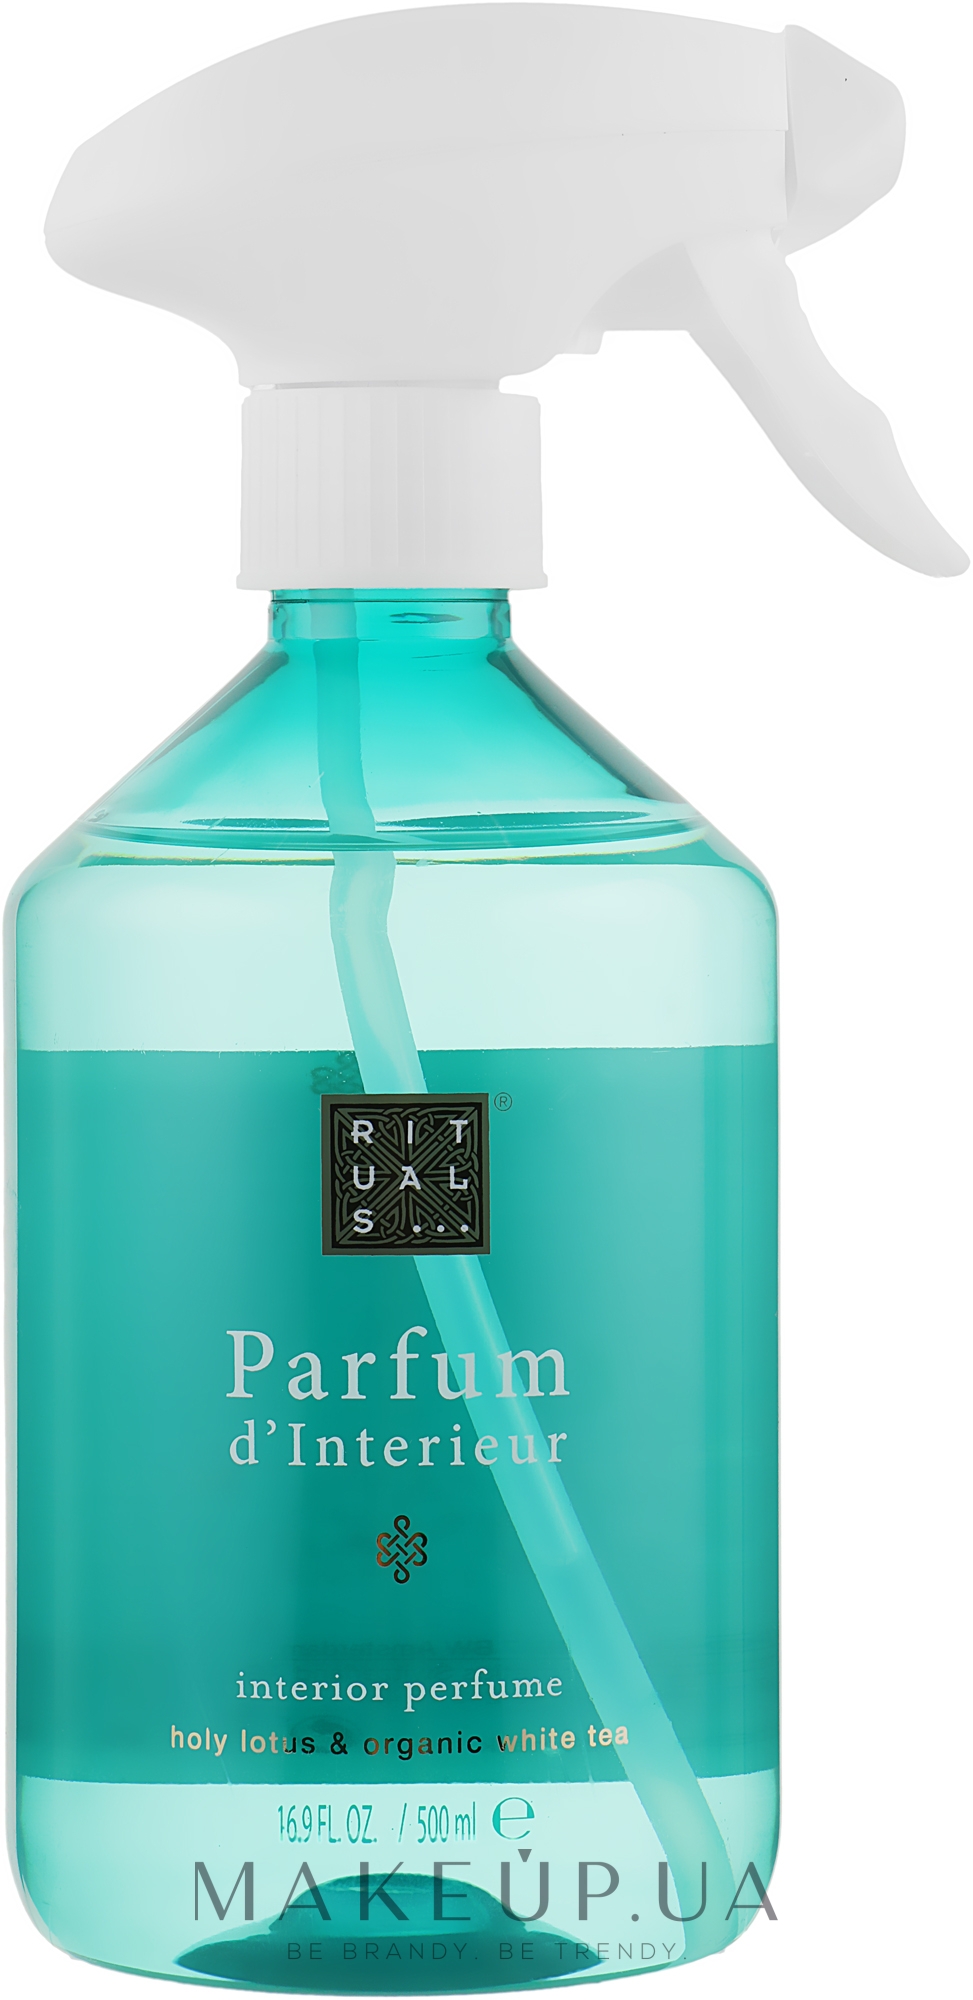 Rituals The Ritual of Karma Parfum D'Interieur - Спрей-парфюм для дома:  купить по лучшей цене в Украине